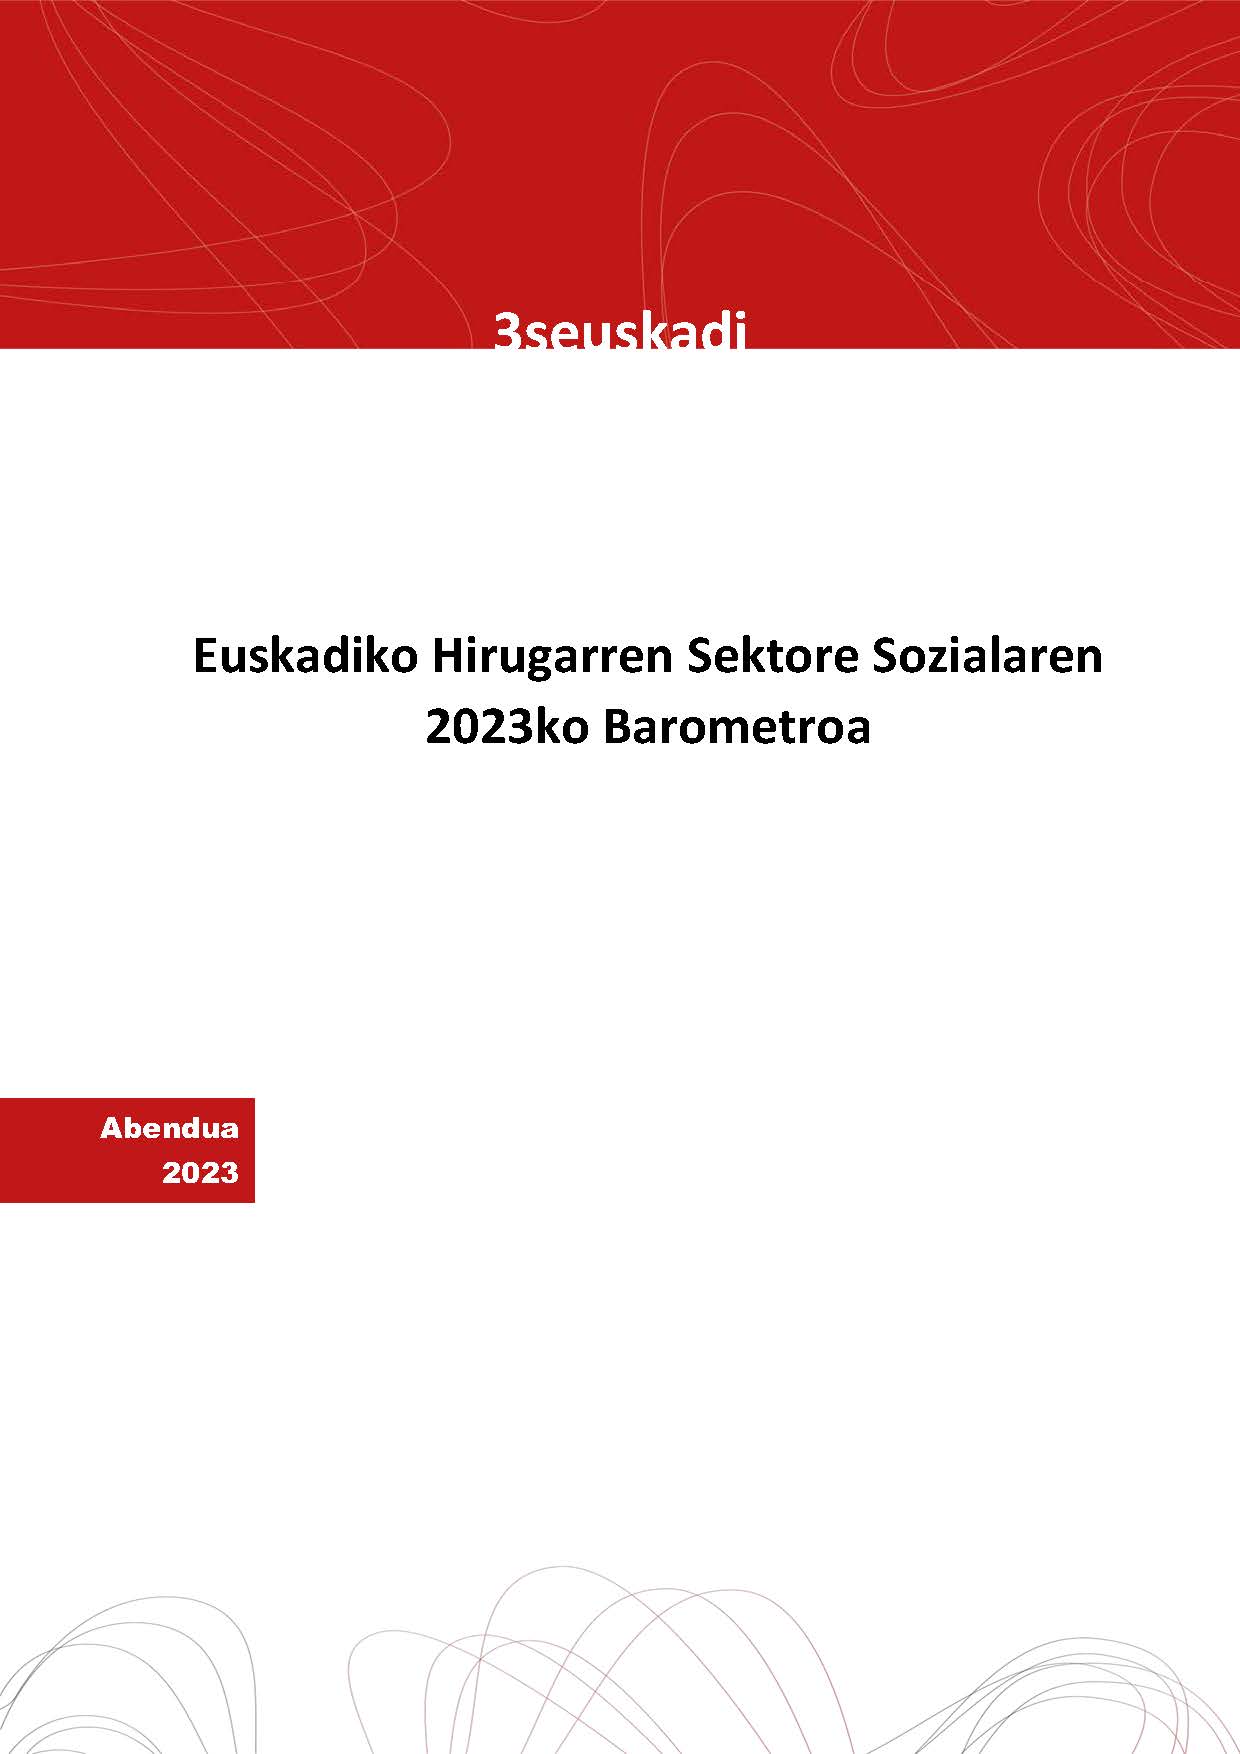 Euskadiko Hirugarren Sektore Sozialaren 2023ko barometroa